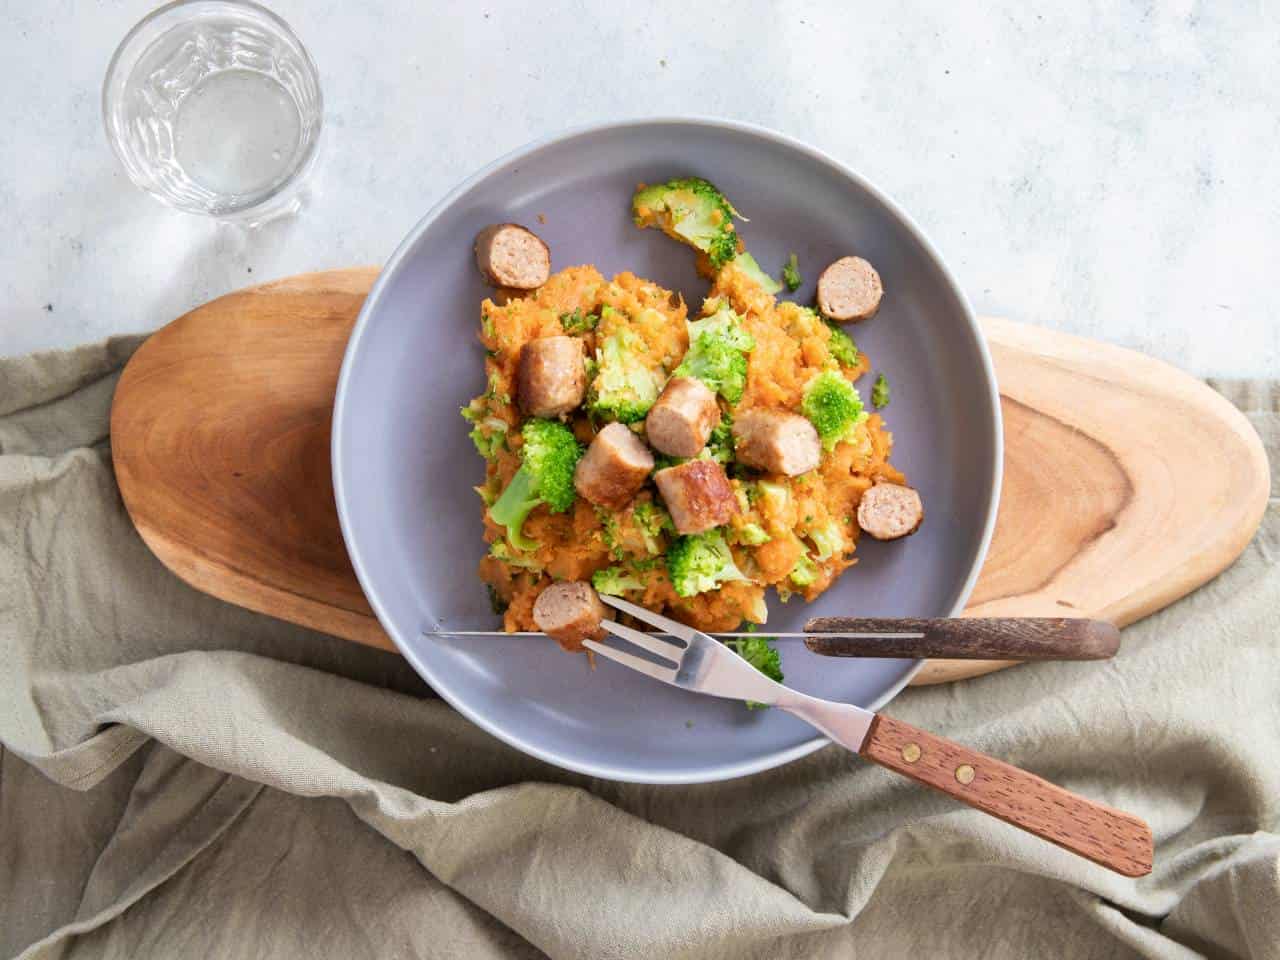 Zoete aardappel stamppot met broccoli. Stamppot recept, zoete aardappel recept, een makkelijke gezonde maaltijd